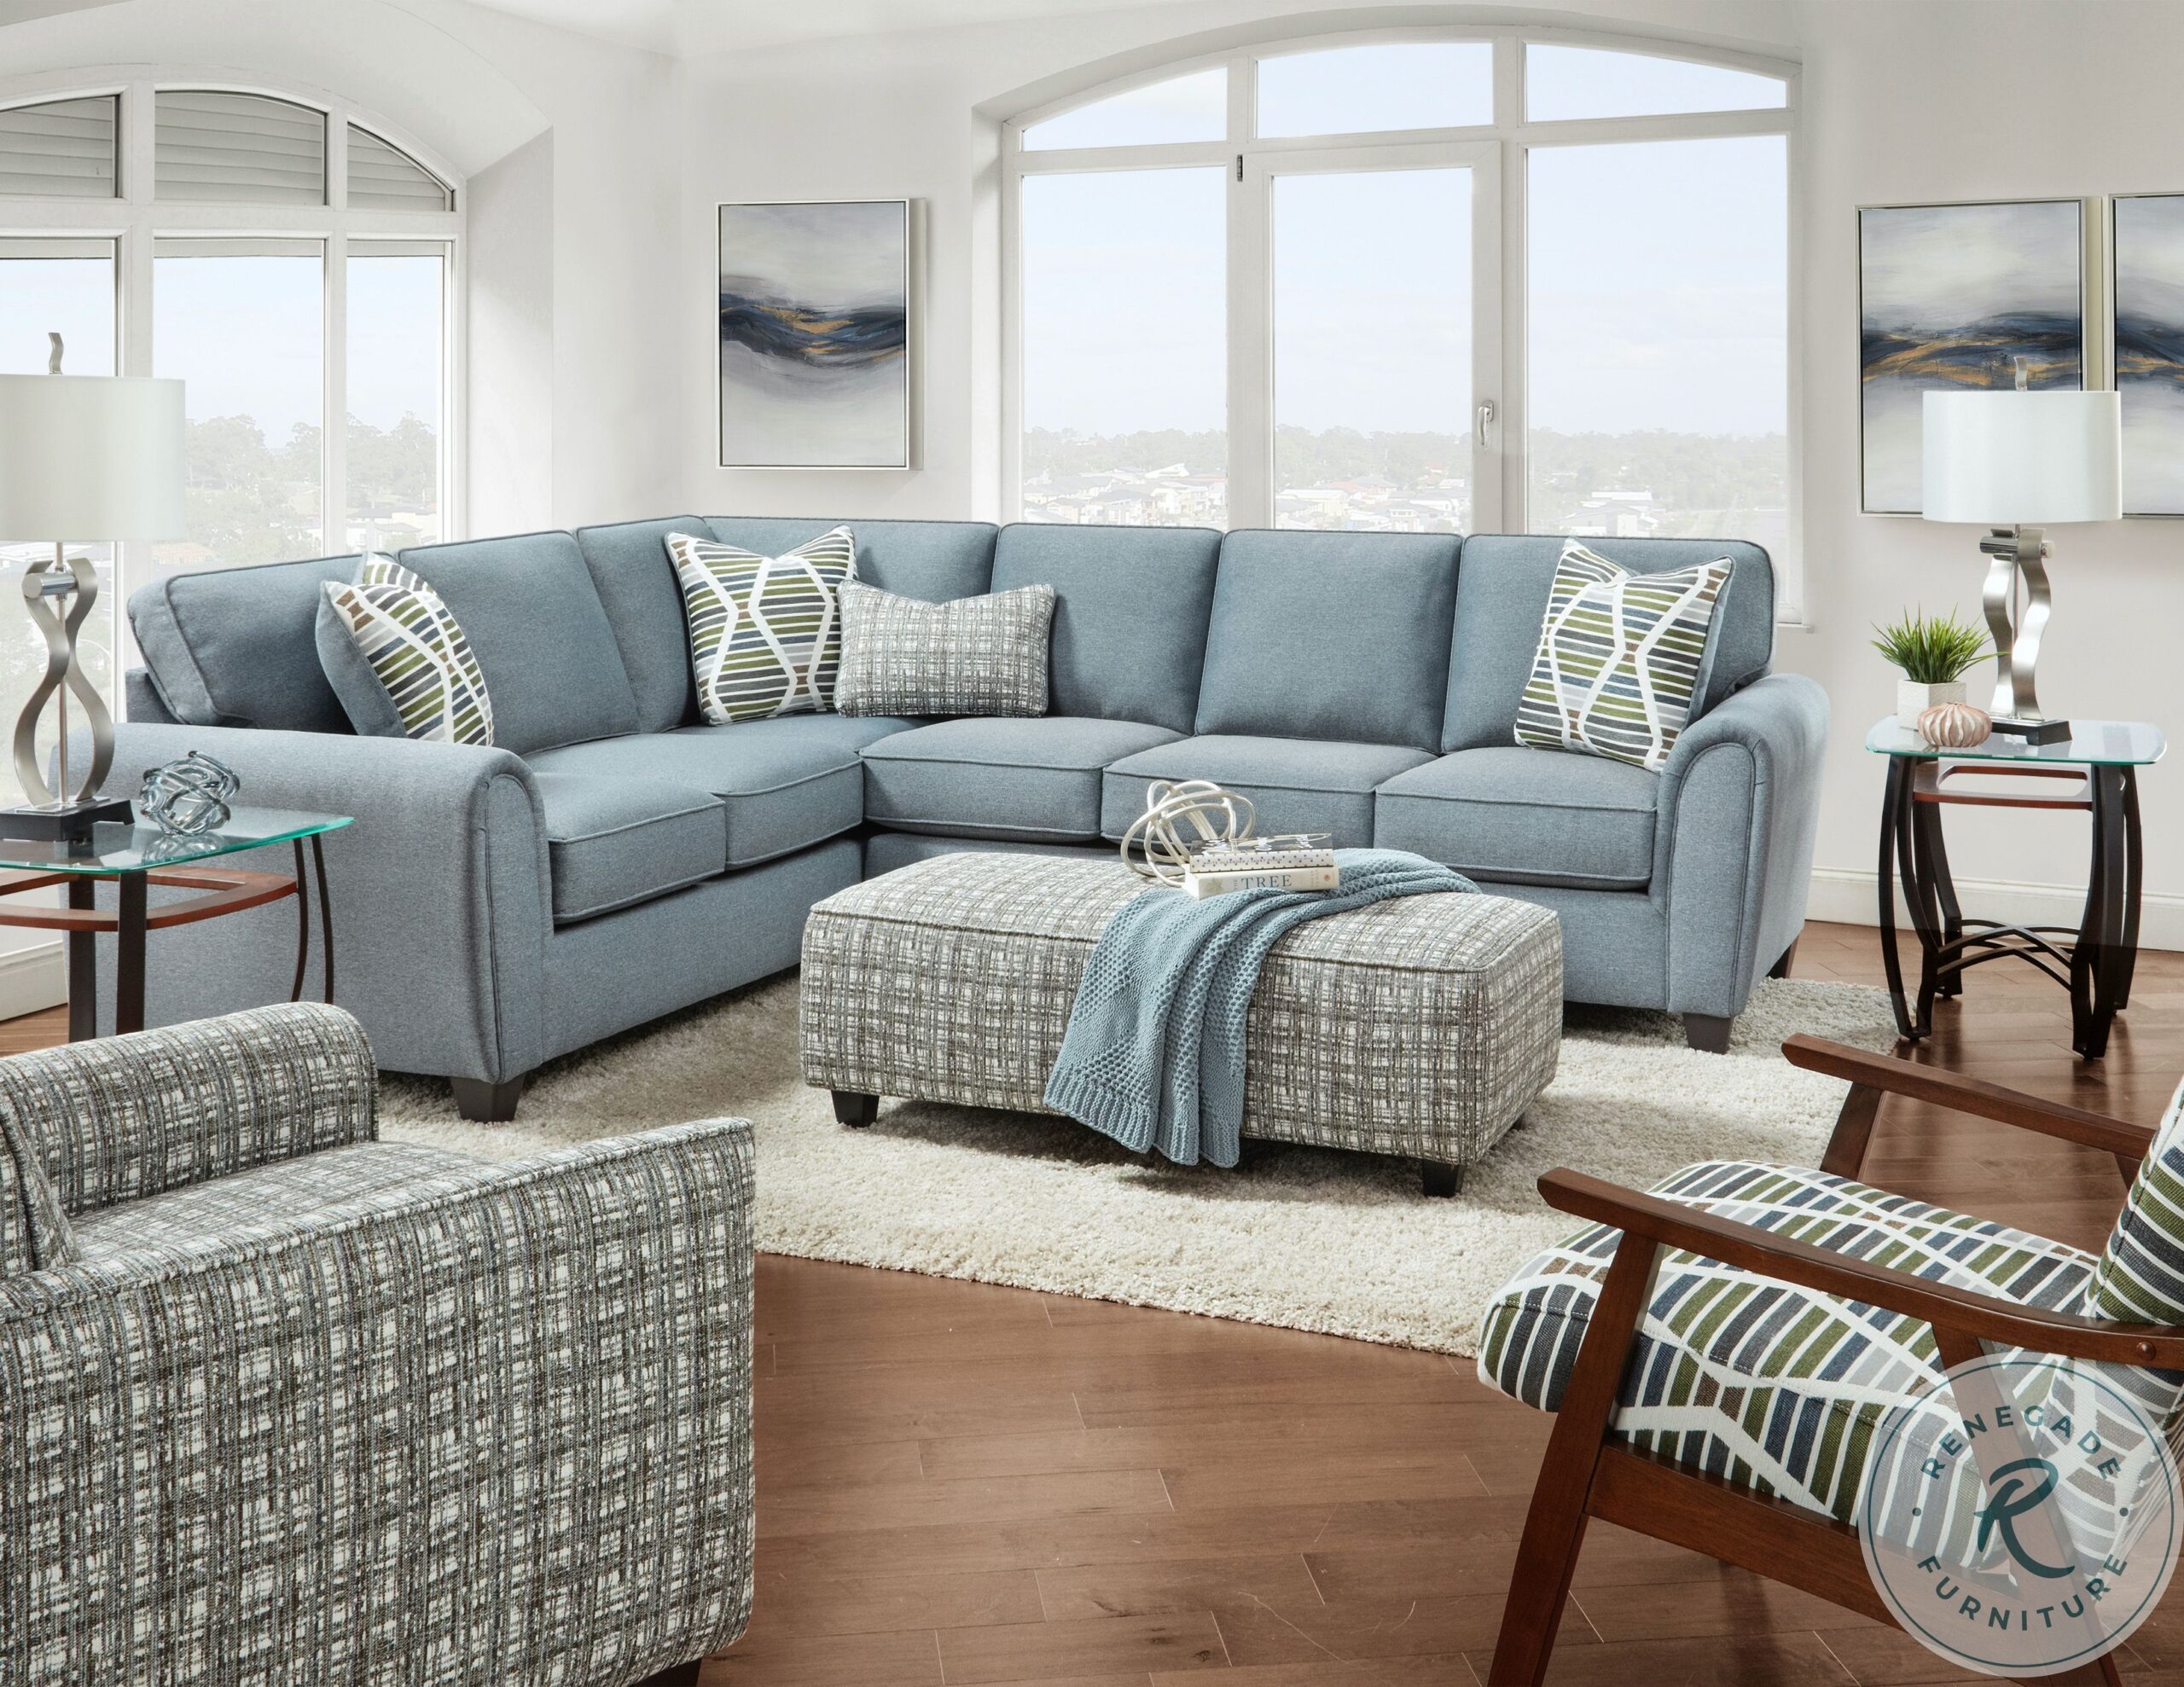 Modern Macarena Sectional Sofa – Stylish, Comfortable, Durable